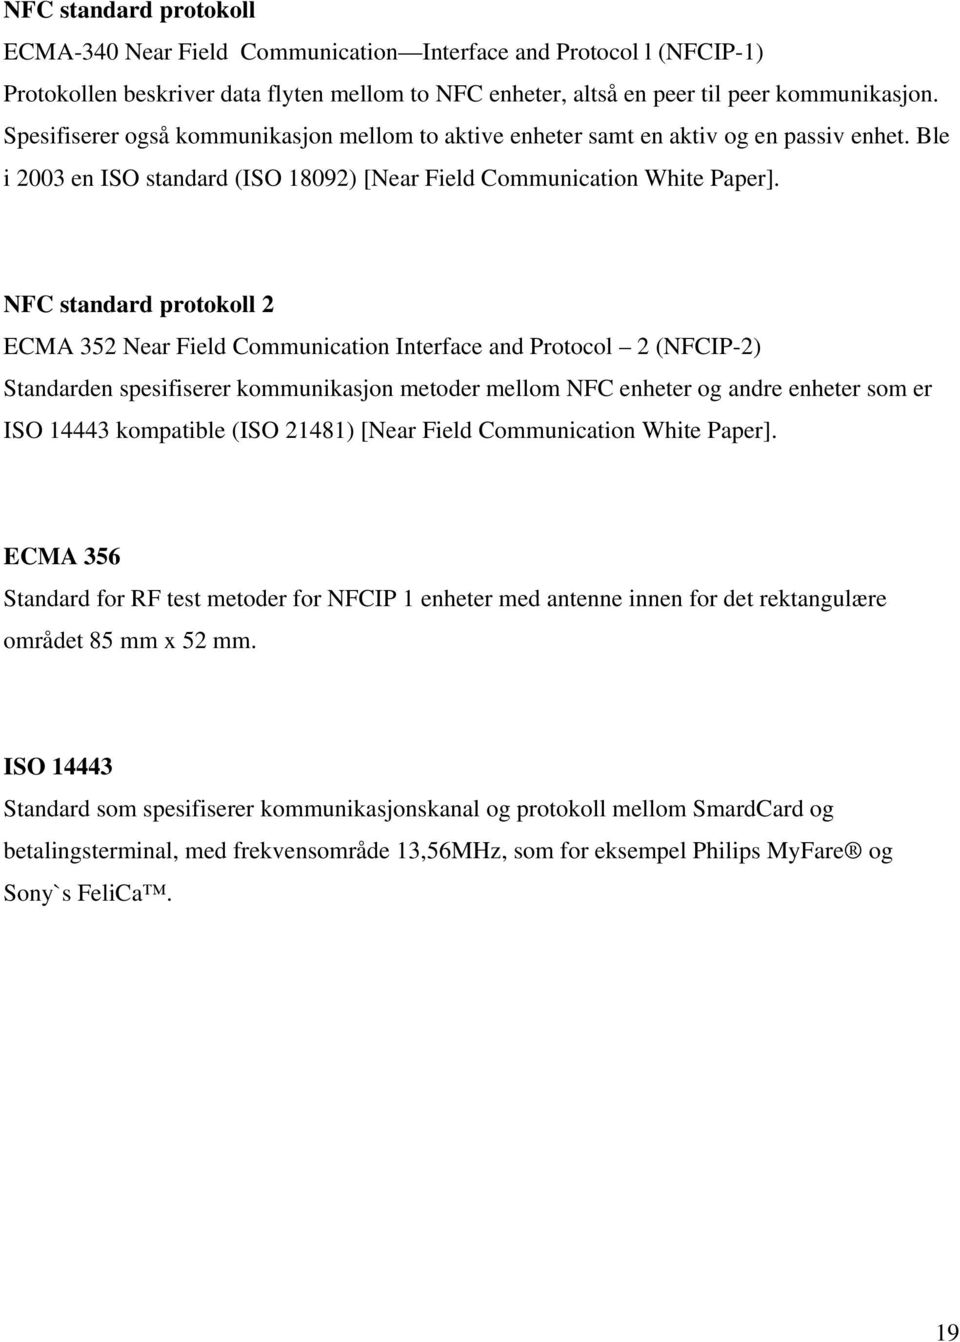 NFC standard protokoll 2 ECMA 352 Near Field Communication Interface and Protocol 2 (NFCIP-2) Standarden spesifiserer kommunikasjon metoder mellom NFC enheter og andre enheter som er ISO 14443